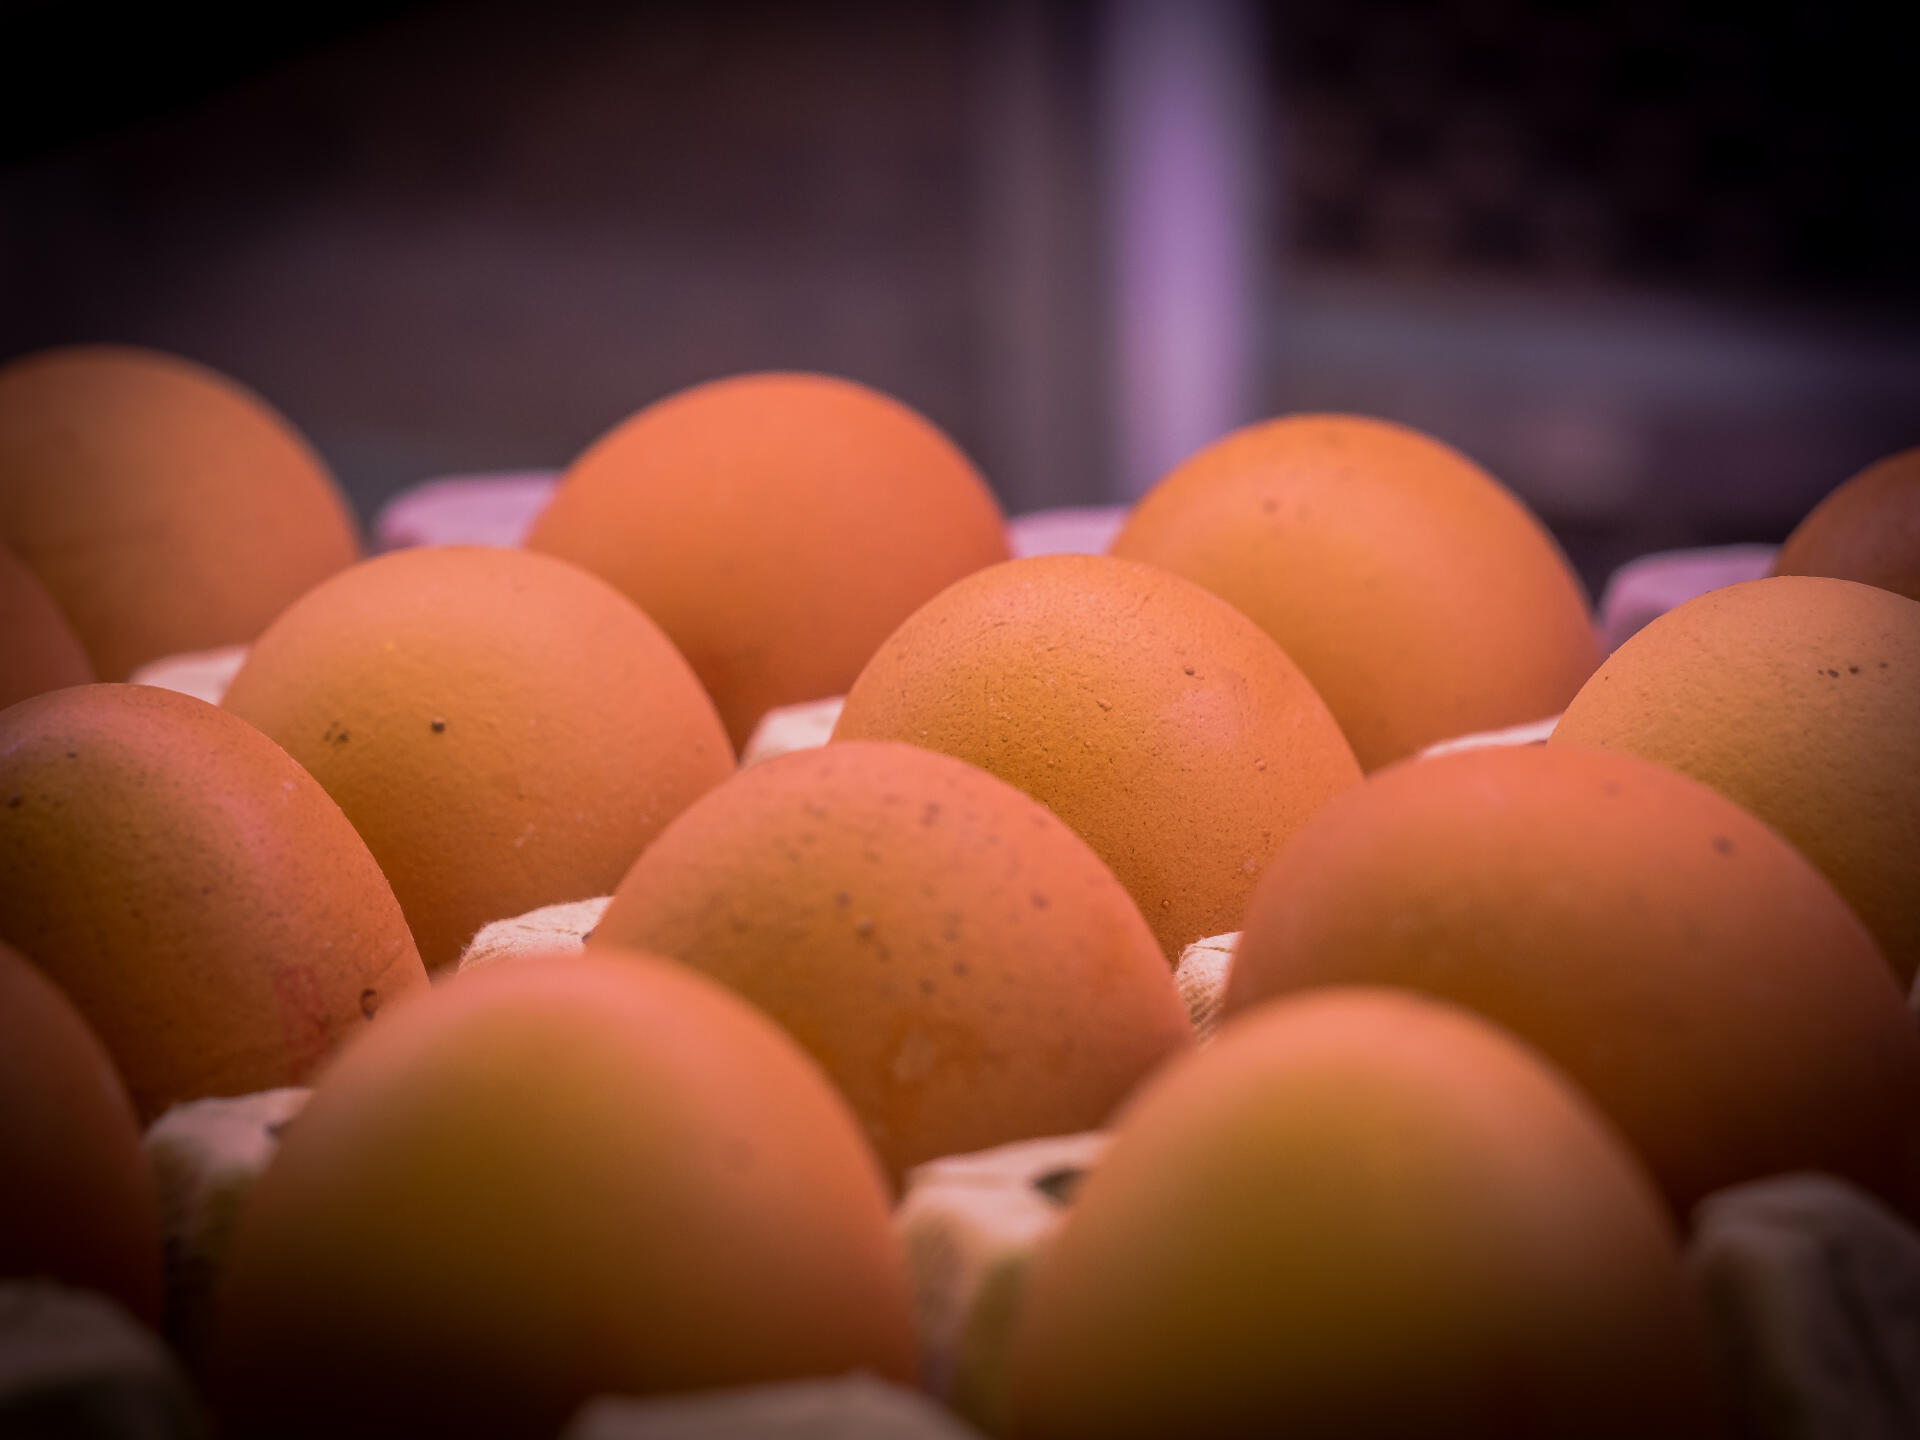 Sis coses sobre els ous que potser no sabies